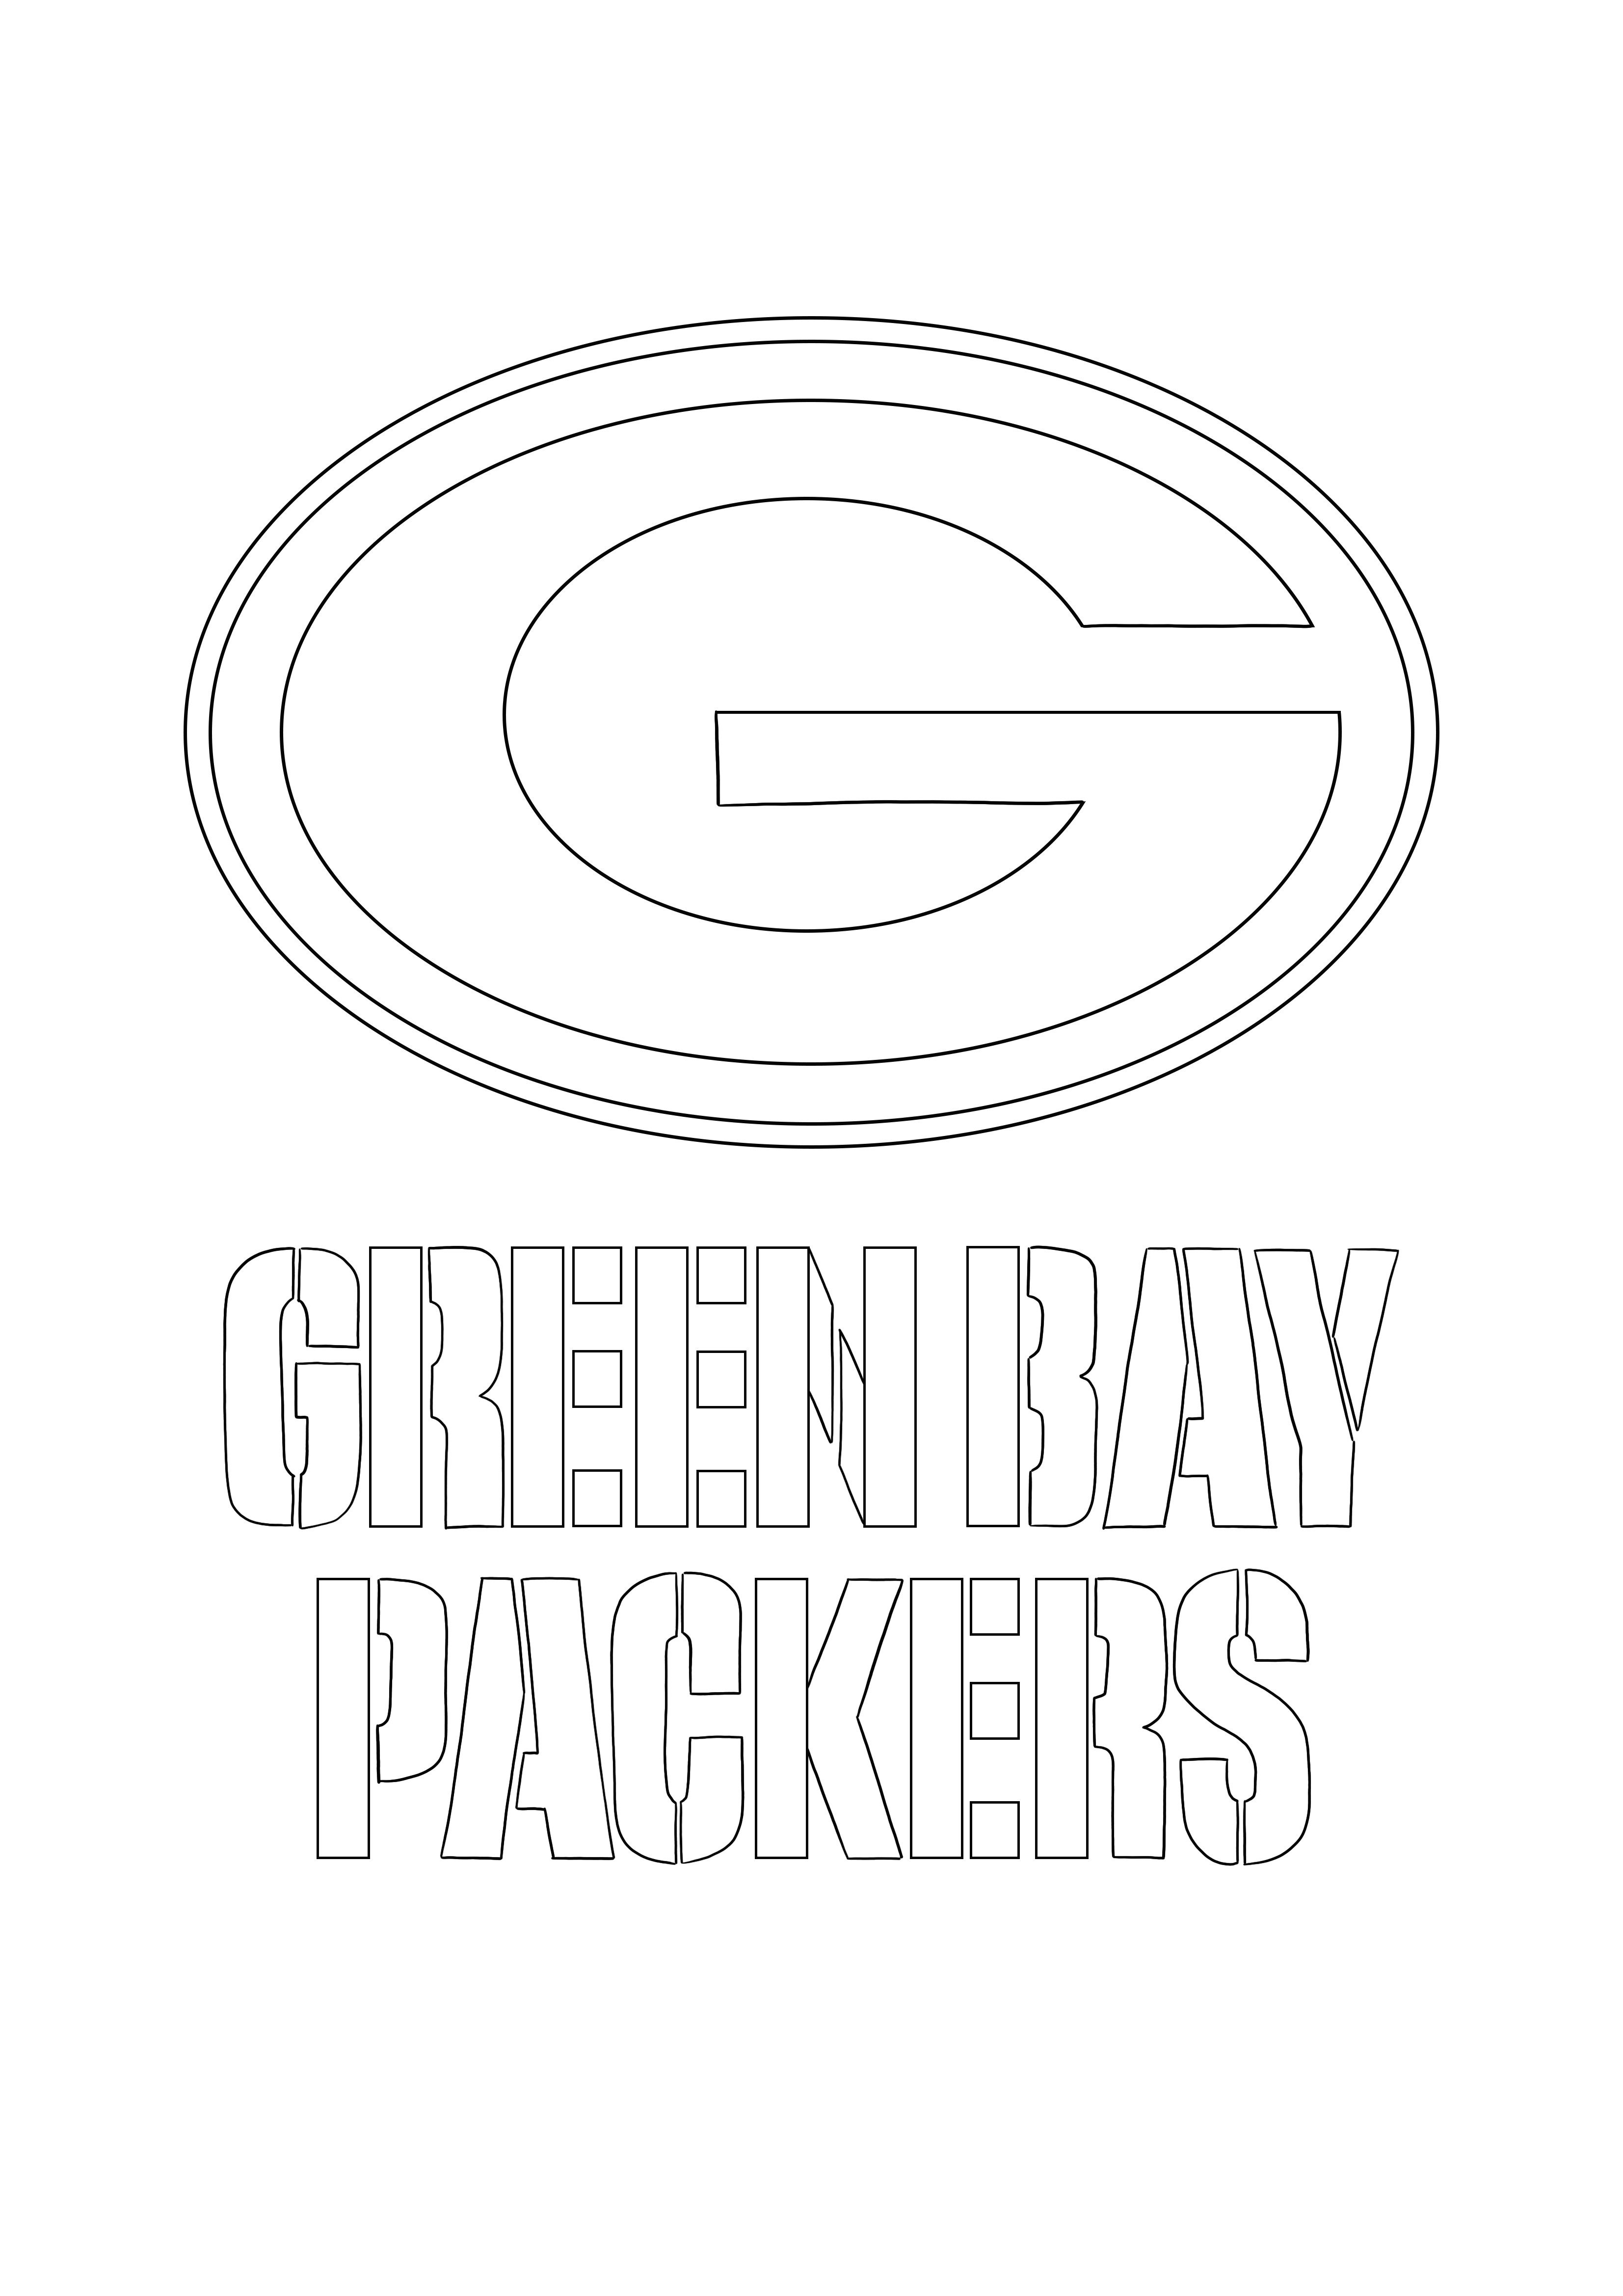 Logo Green Bay Packers za darmo do pokolorowania i wydrukowania strony dla dzieci